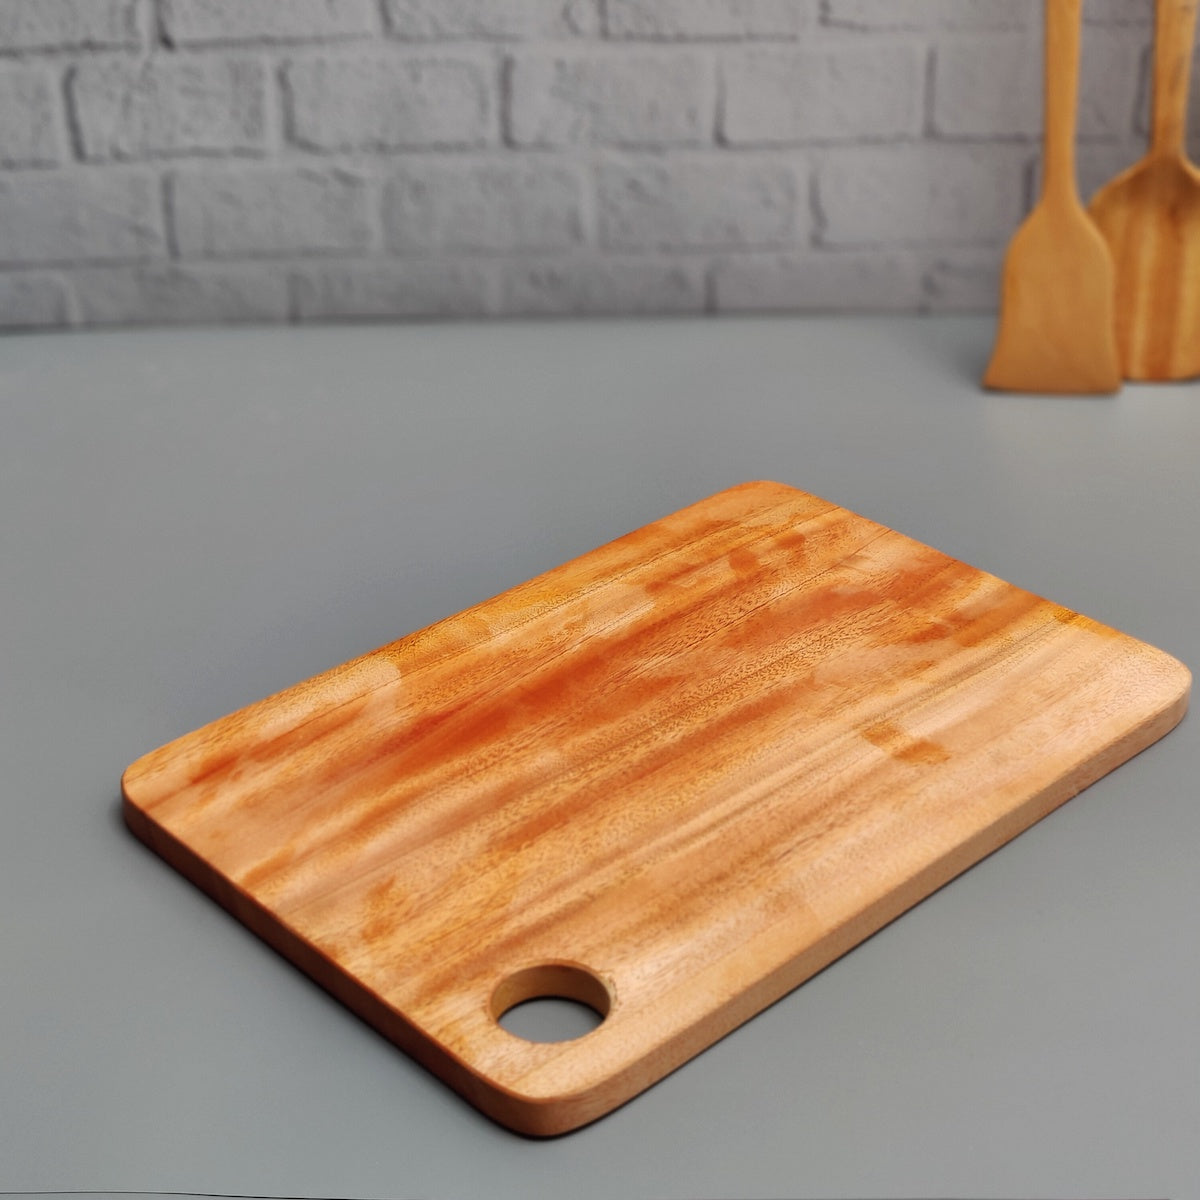 http://zishta.com/cdn/shop/products/Neem-ChoppingBoard-Zishta-Traditional-Neem-Wood-Accessories.jpg?v=1664619781&width=2048